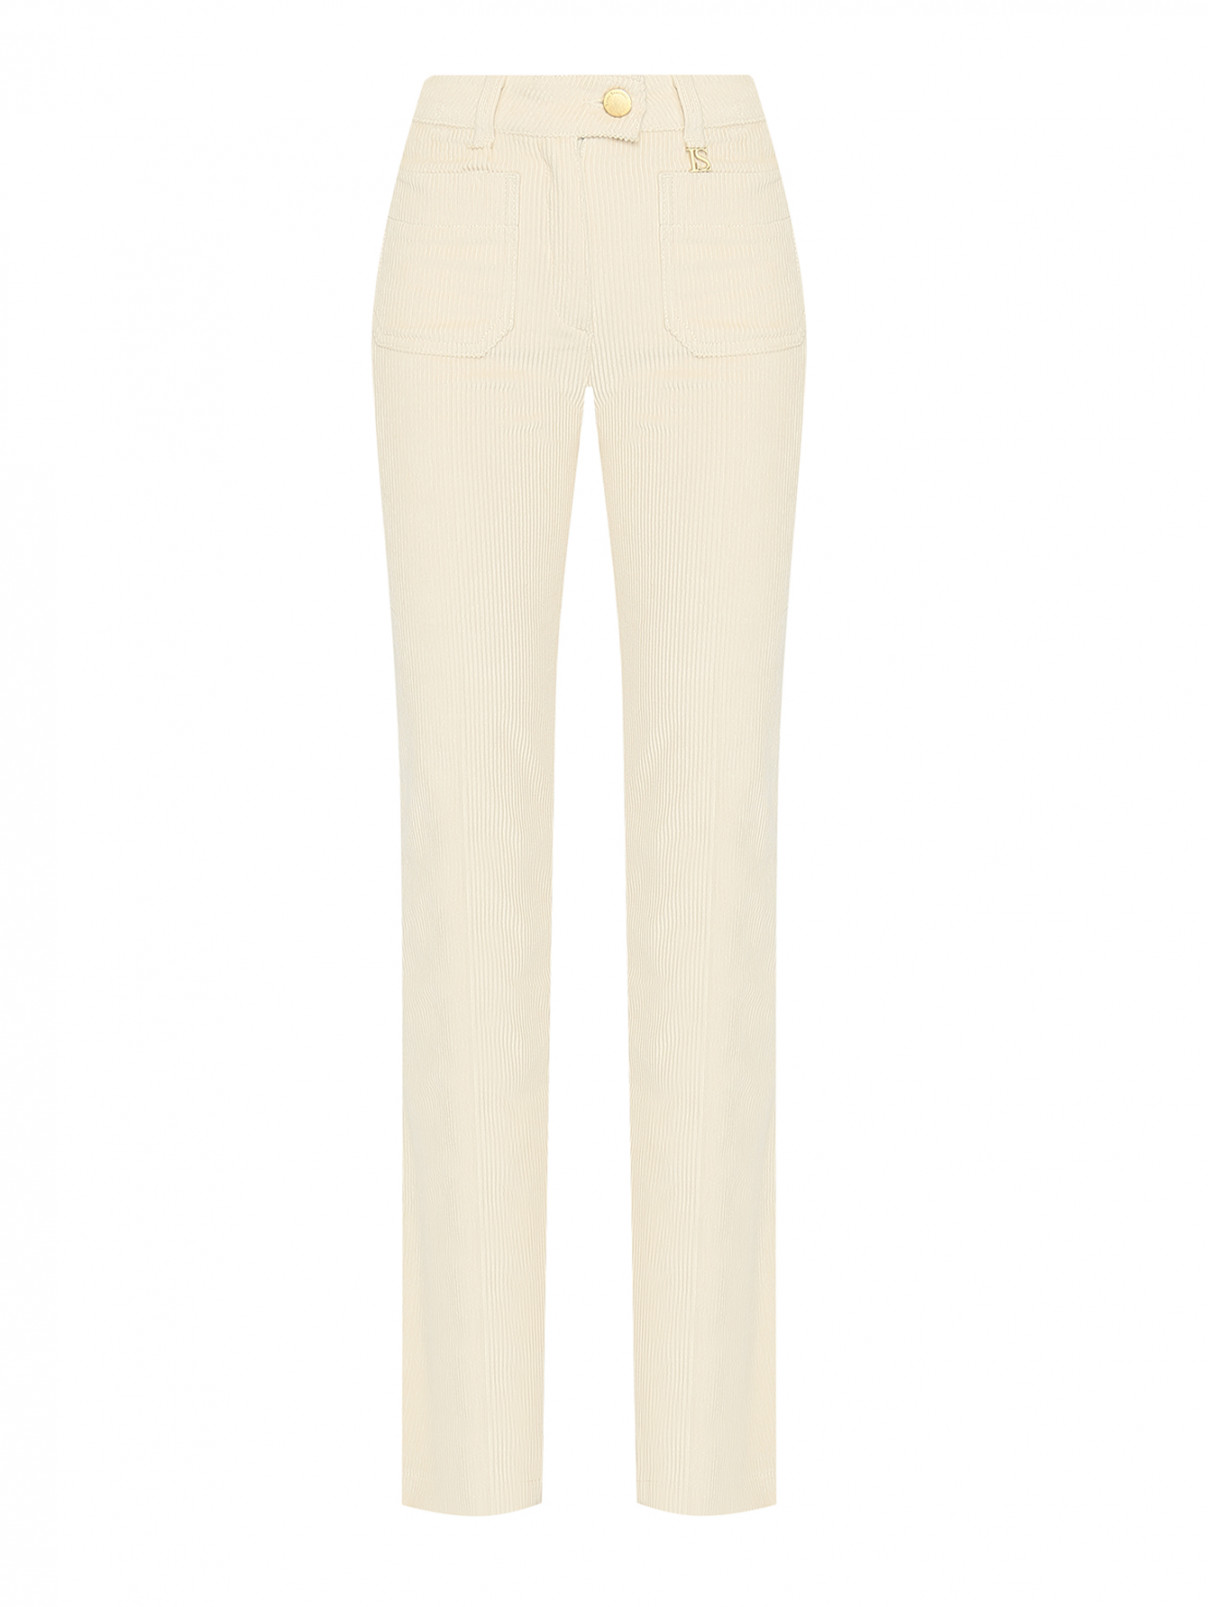 Вельветовые брюки с накладными карманами Luisa Spagnoli  –  Общий вид  – Цвет:  Бежевый